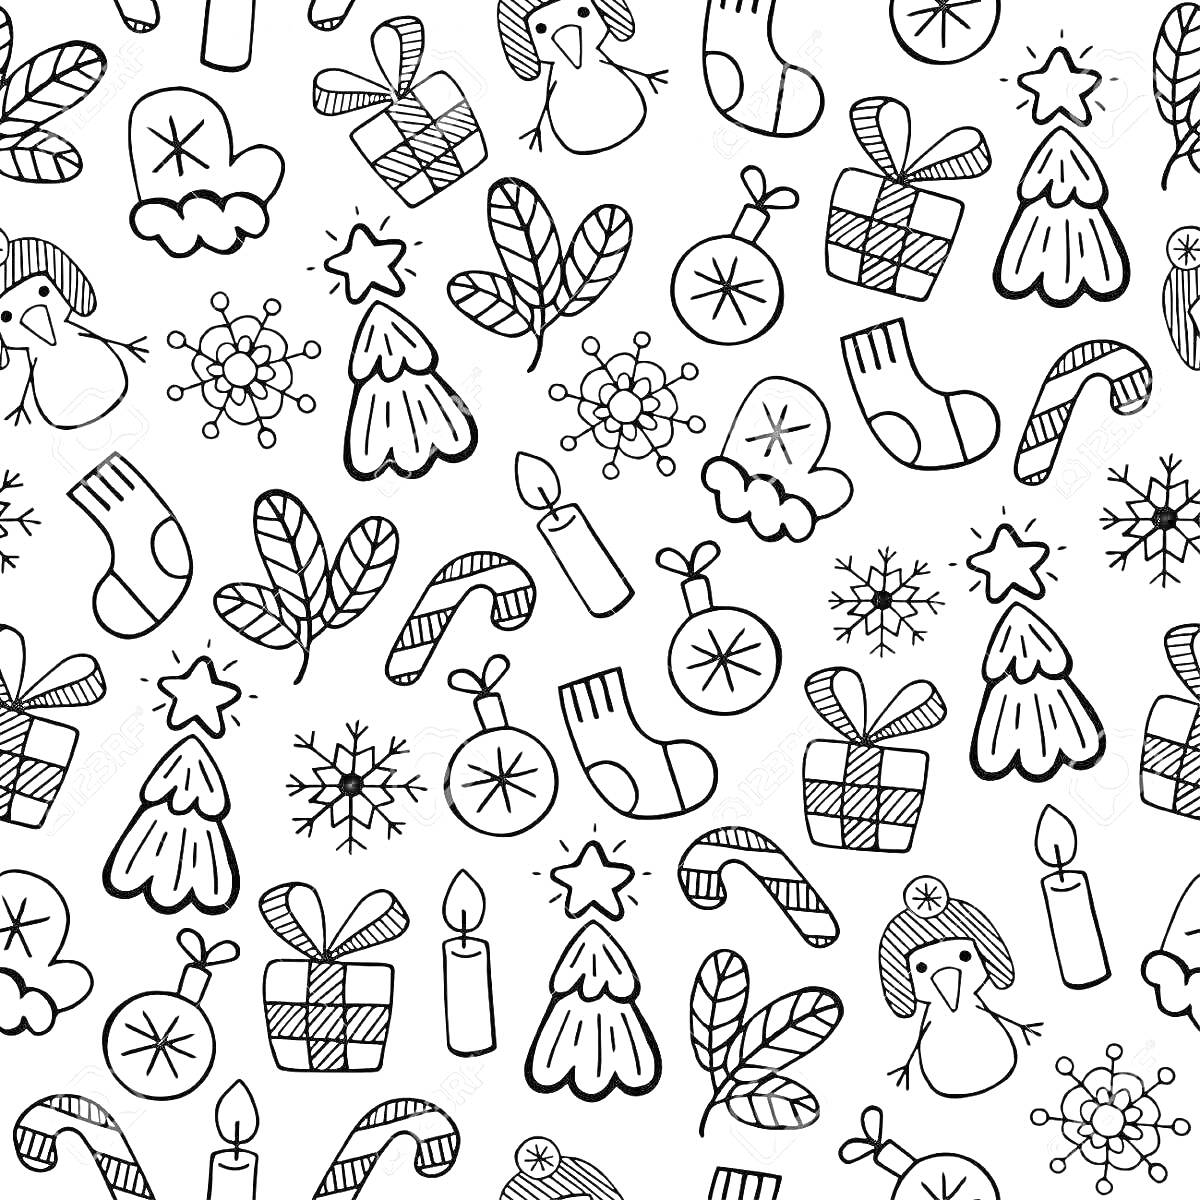 Раскраска новогодние стикеры — варежки, подарки, елки, свечи, пингвины, носки, конфеты, снежинки, рождественские пряники, шапки